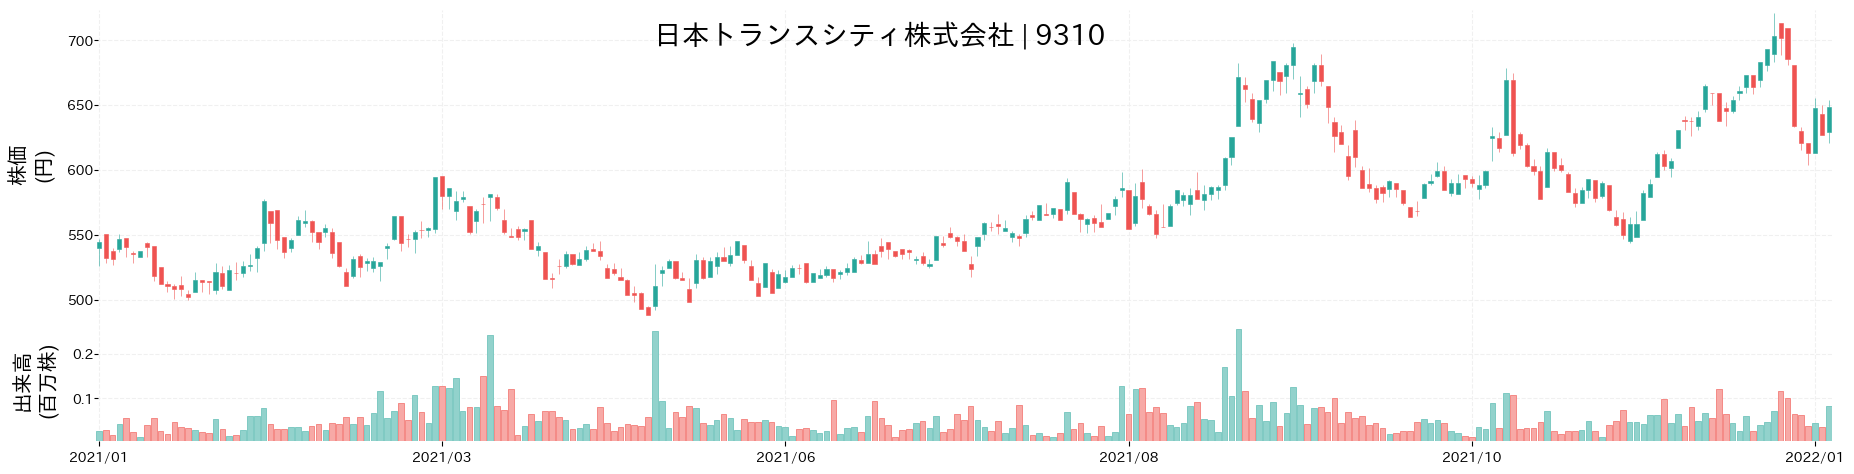 日本トランスシティの株価推移(2021)